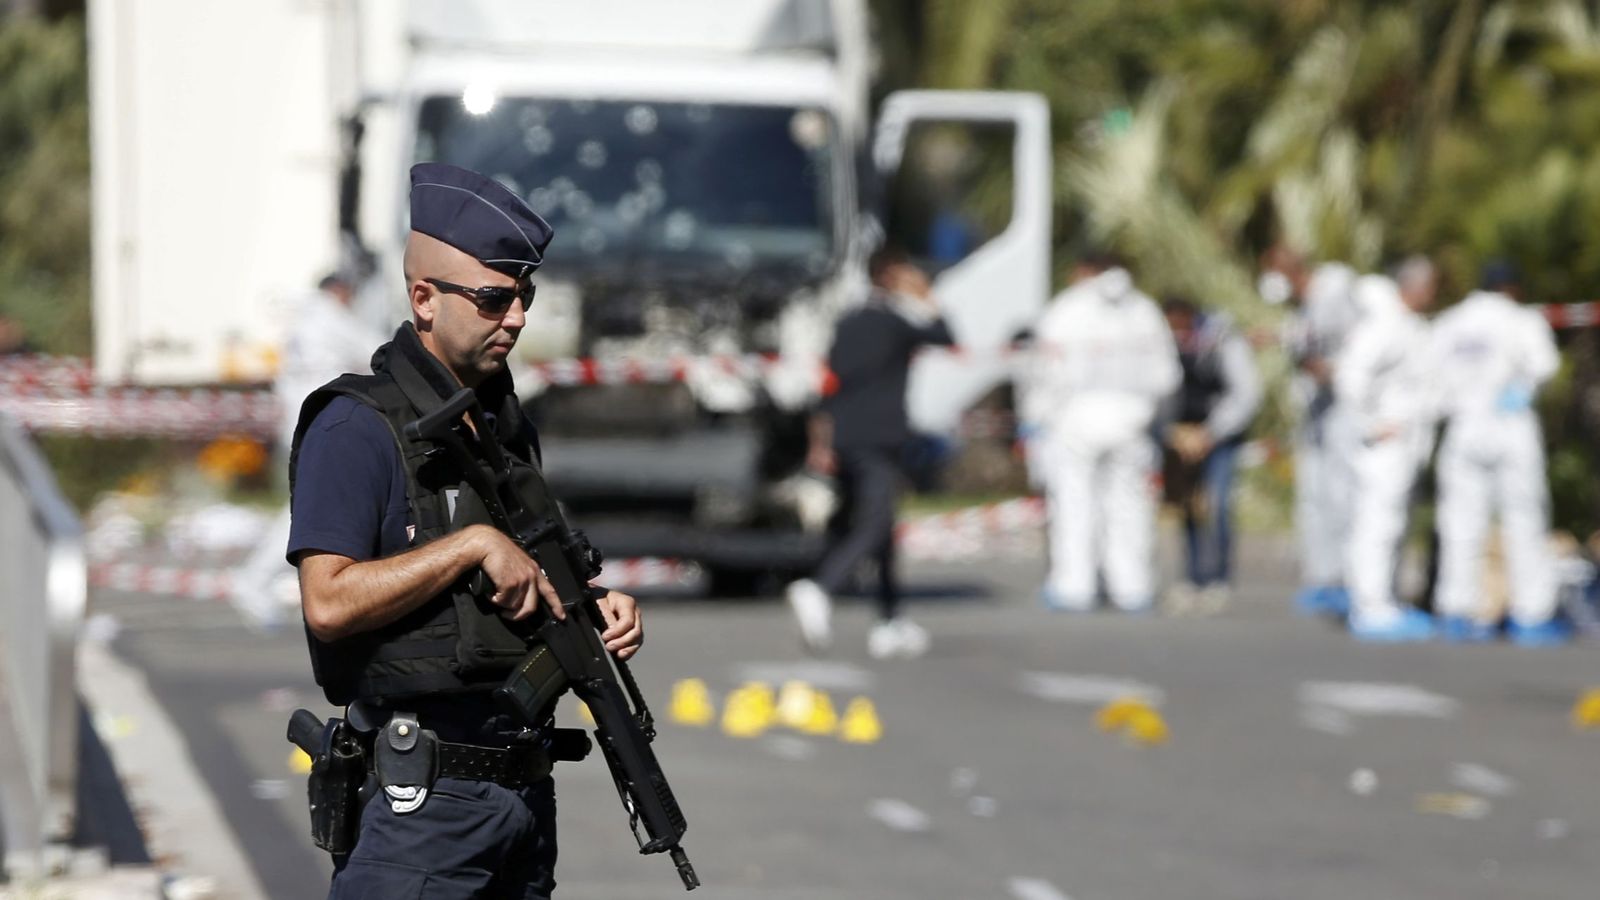 Foto: La policía custodia el camión del atentado en Niza. (Reuters)